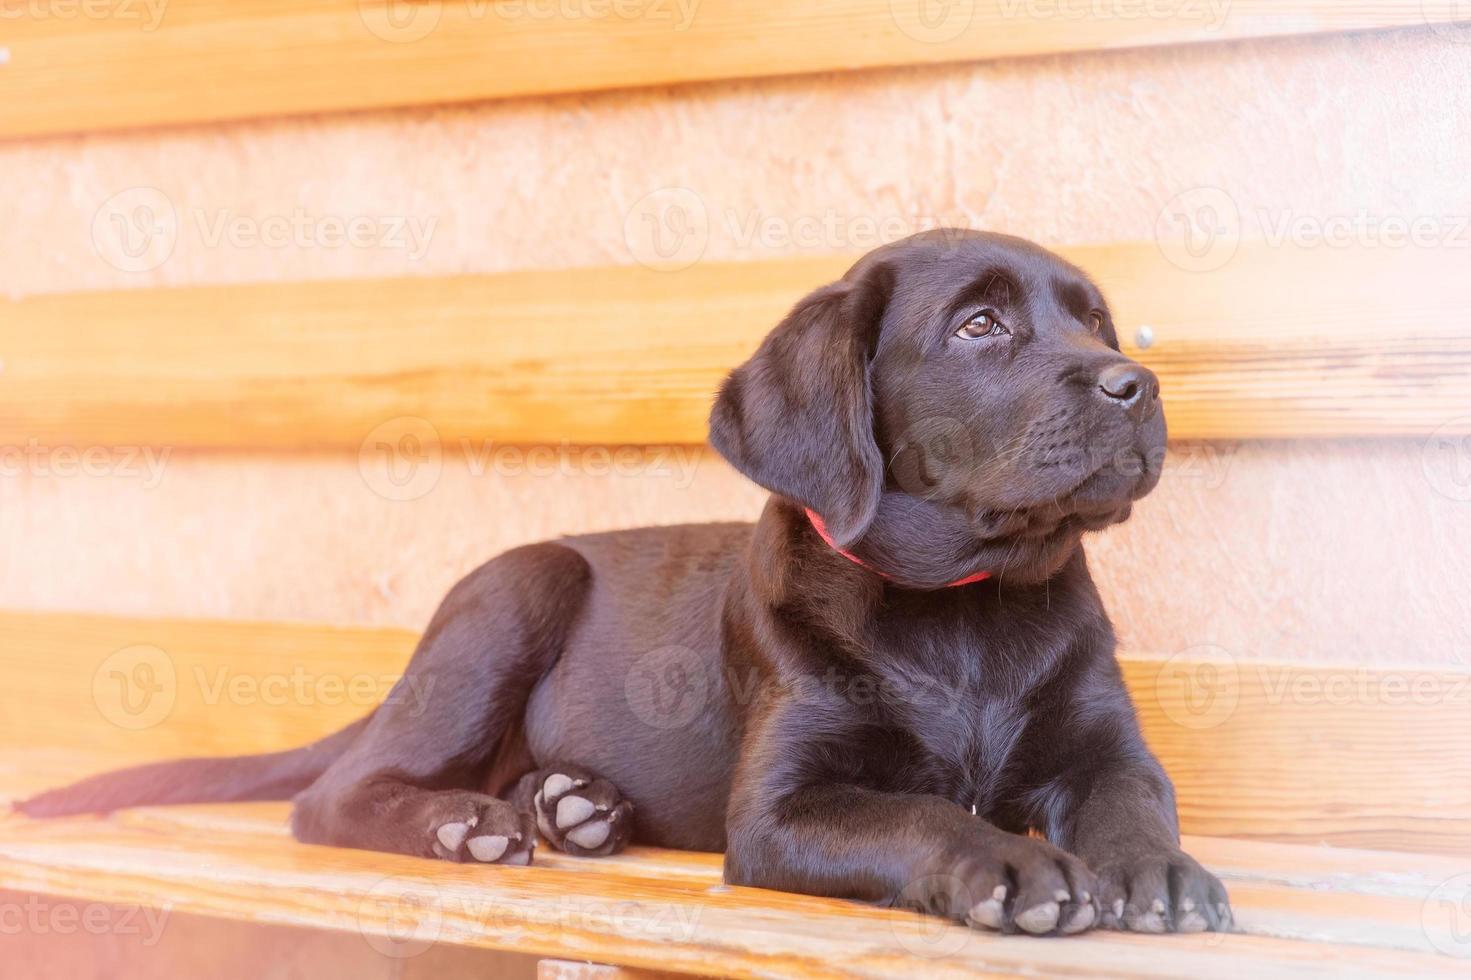 Tahiti Handvol Lounge puppy zwarte labrador retriever liggend op een bankje tegen de achtergrond  van de muur op een zonnige dag. hond 8010701 stockfoto bij Vecteezy